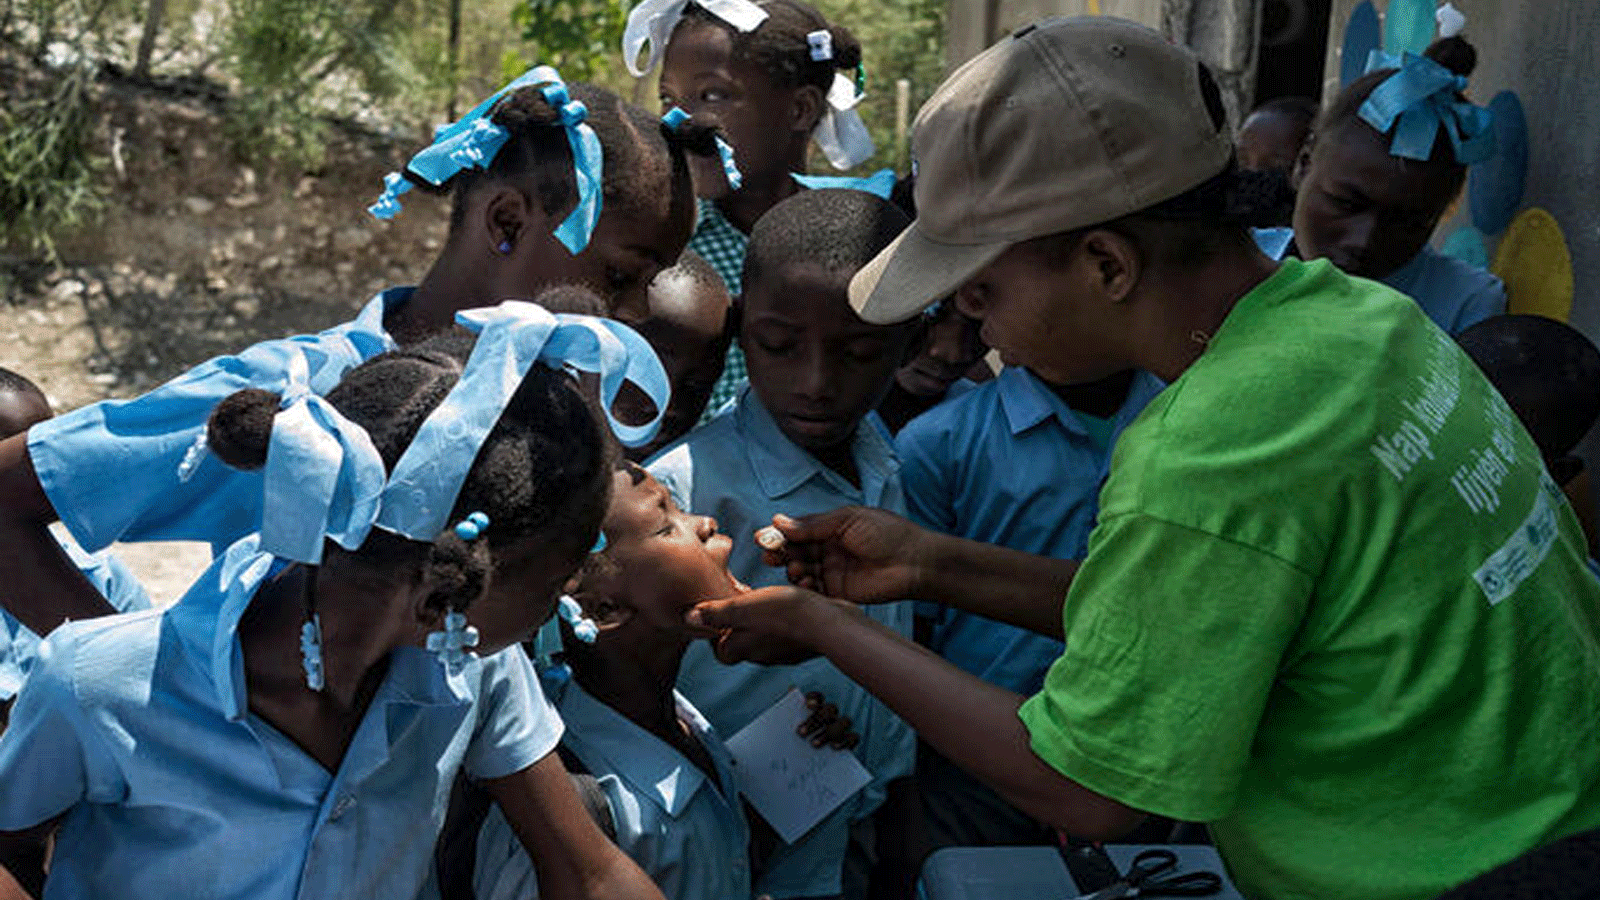 لقطة أرشيفية من حملة تطعيم ضد الكوليرا أطلقتها حكومة هايتي بالتعاون مع الأمم المتحدة.(UN)